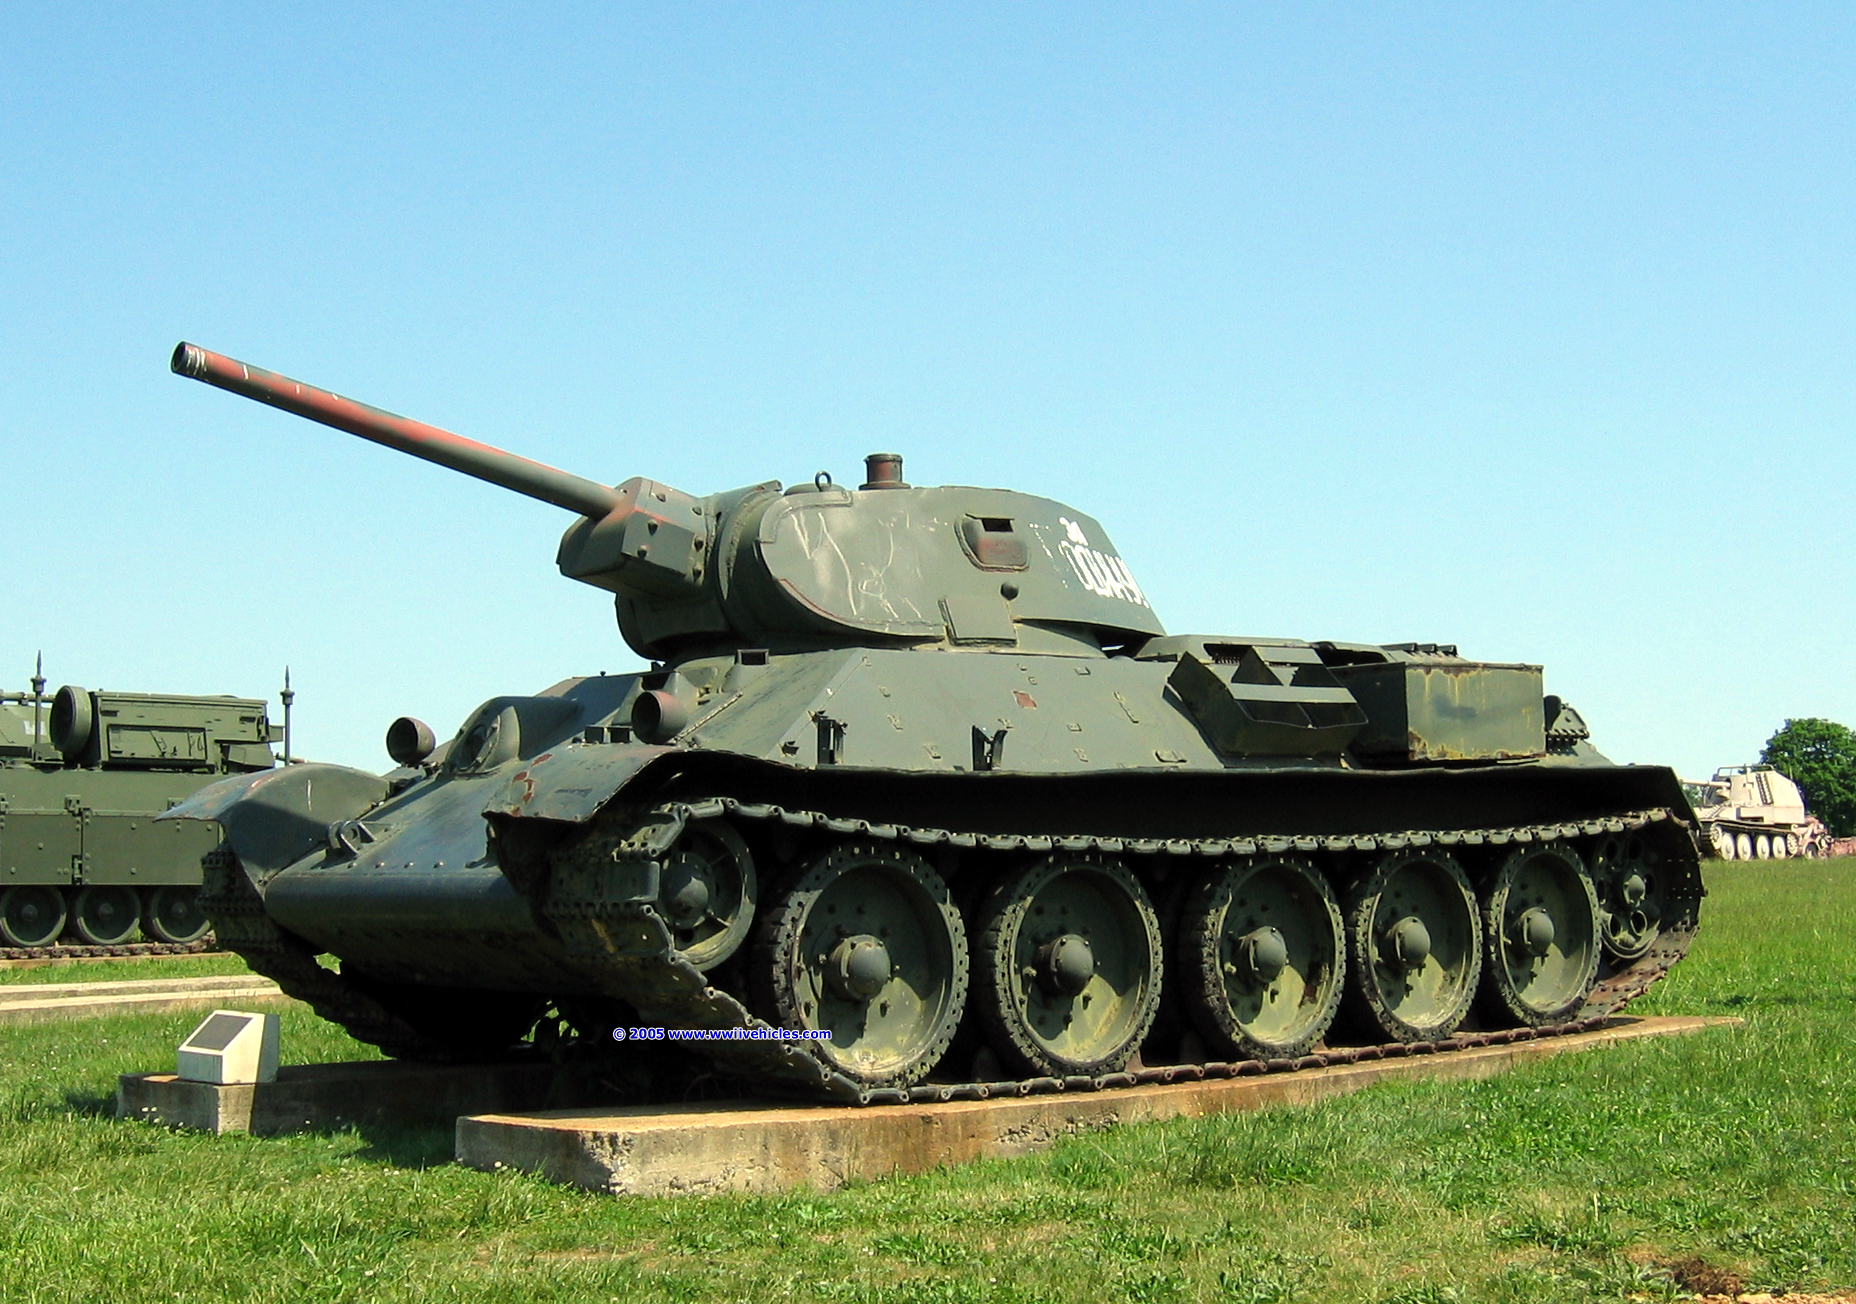 Xe tăng T-34 là một trong những vũ khí quân sự nổi bật của Hồng quân